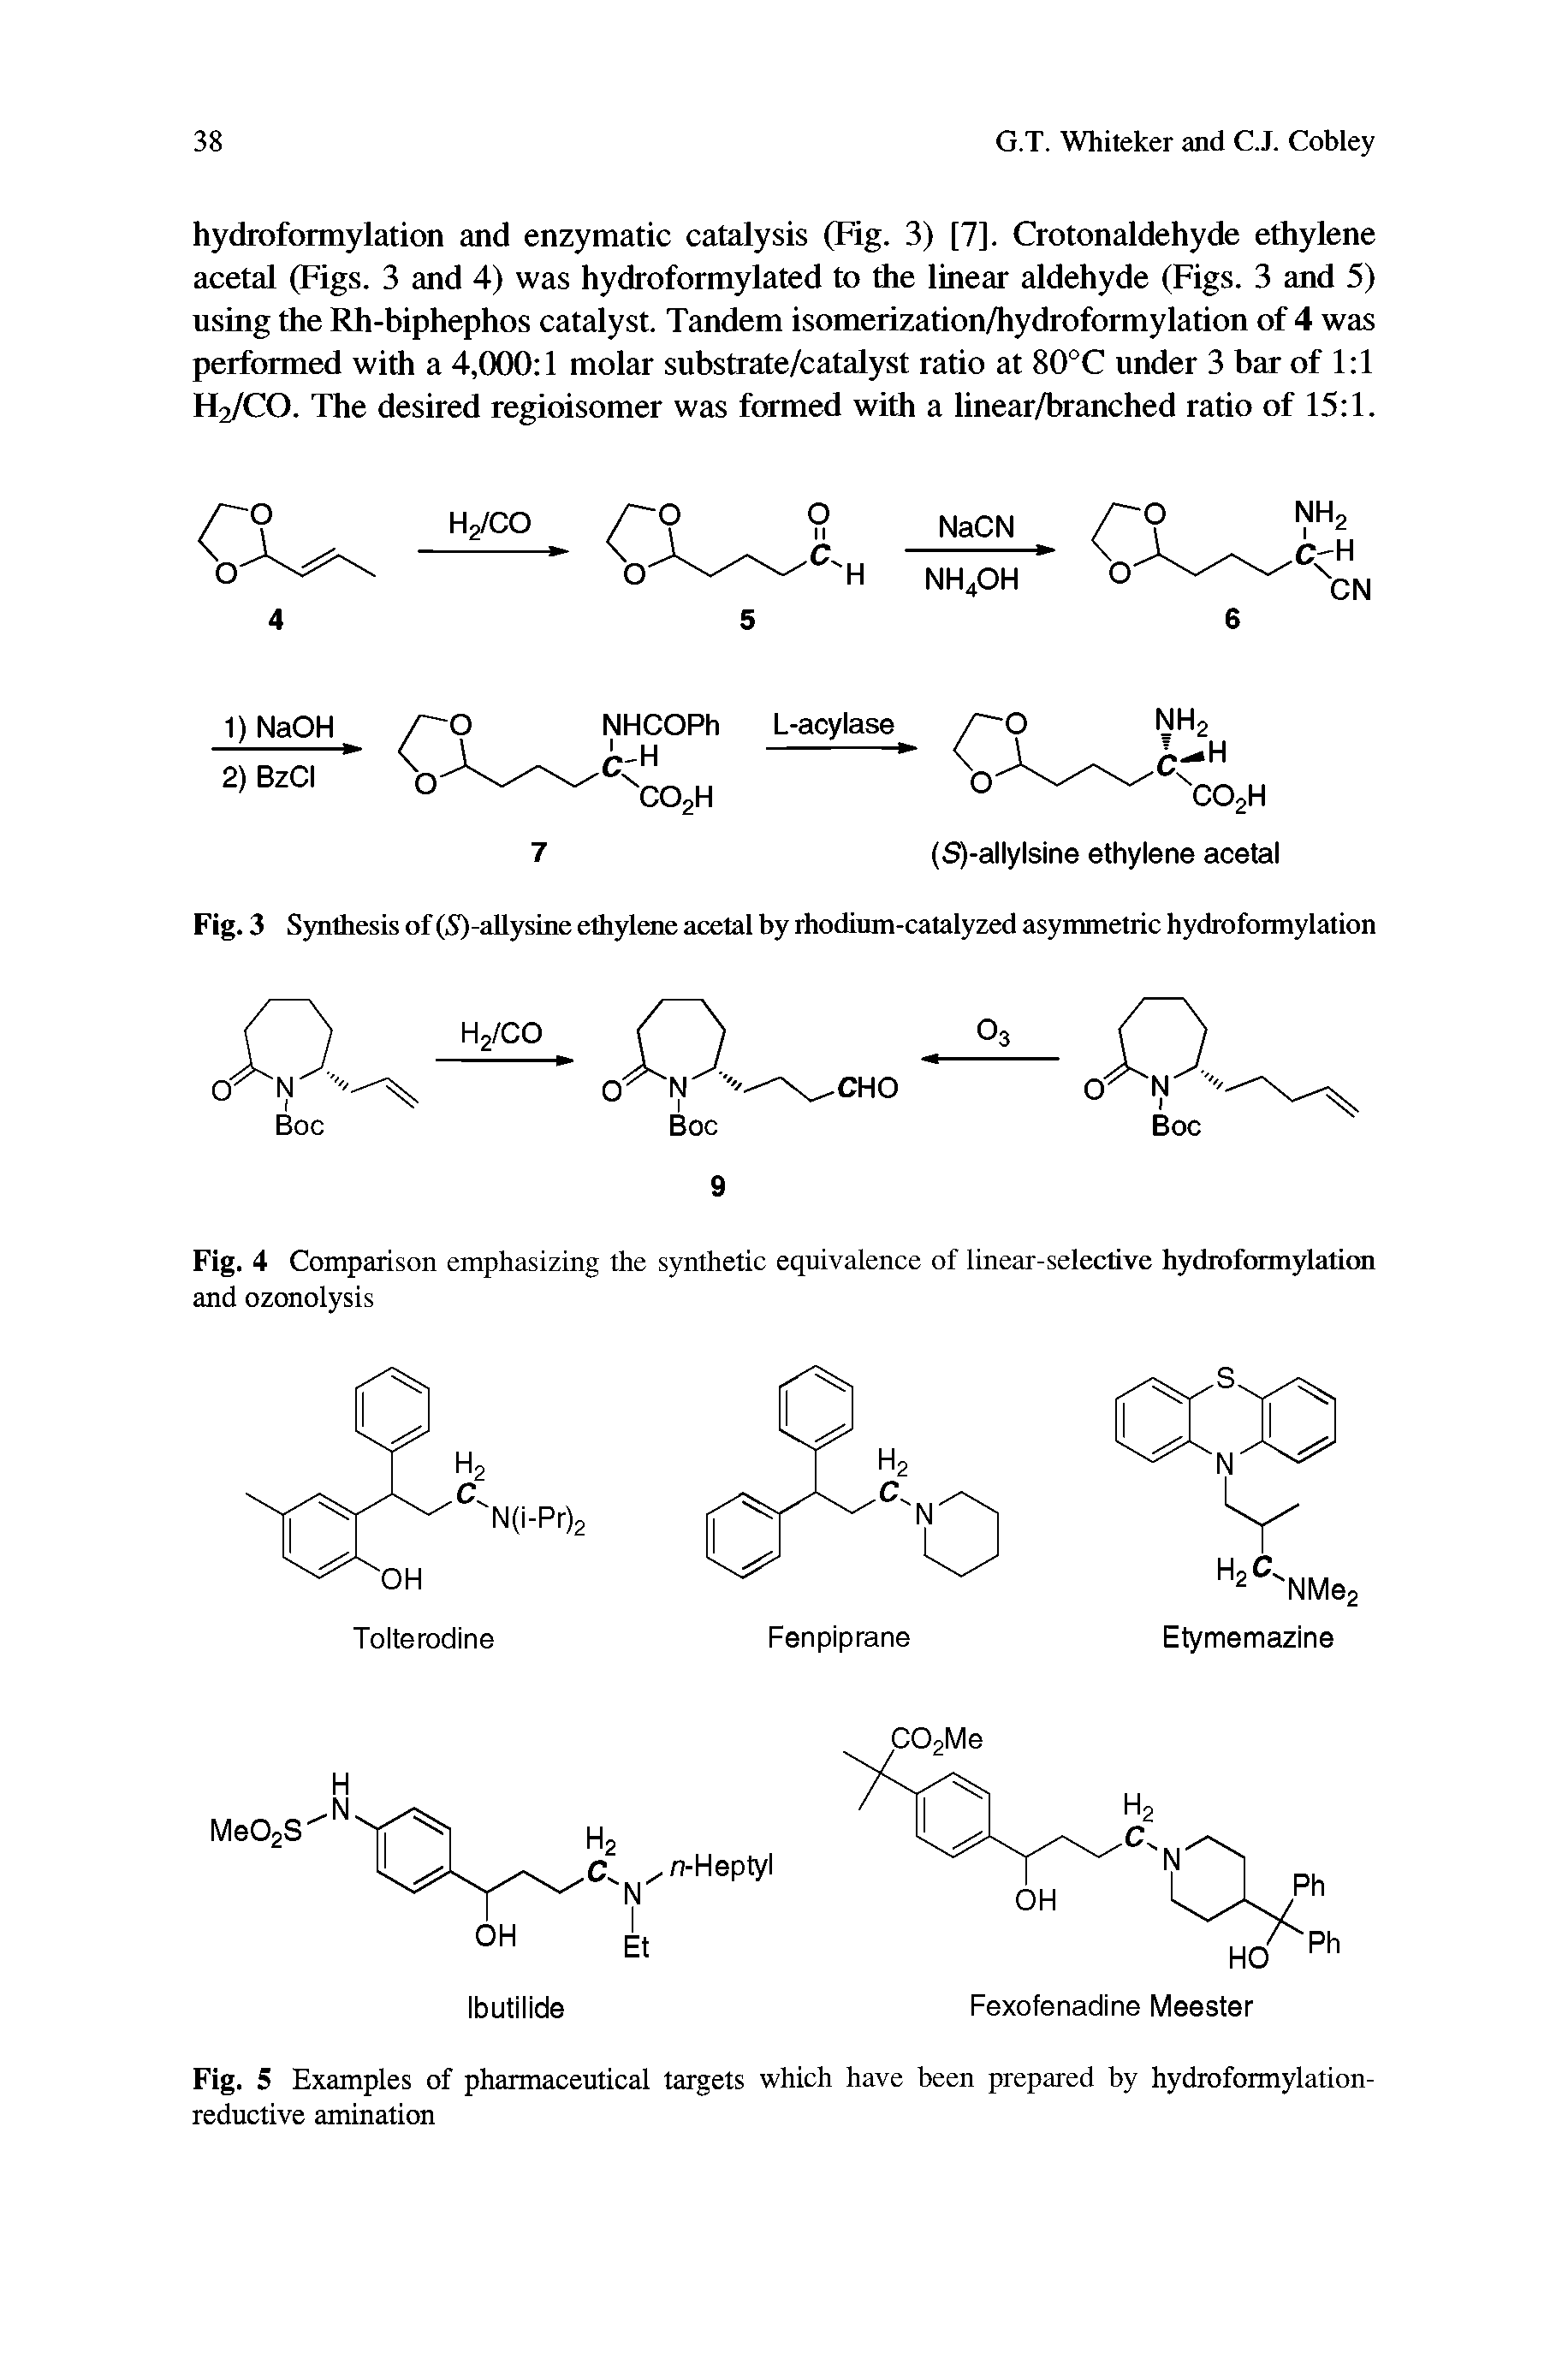 Fig. 3 Synthesis of (5)-allysine ethylene acetal by rhodium-catalyzed asymmetric hydroformylation H2/CO...